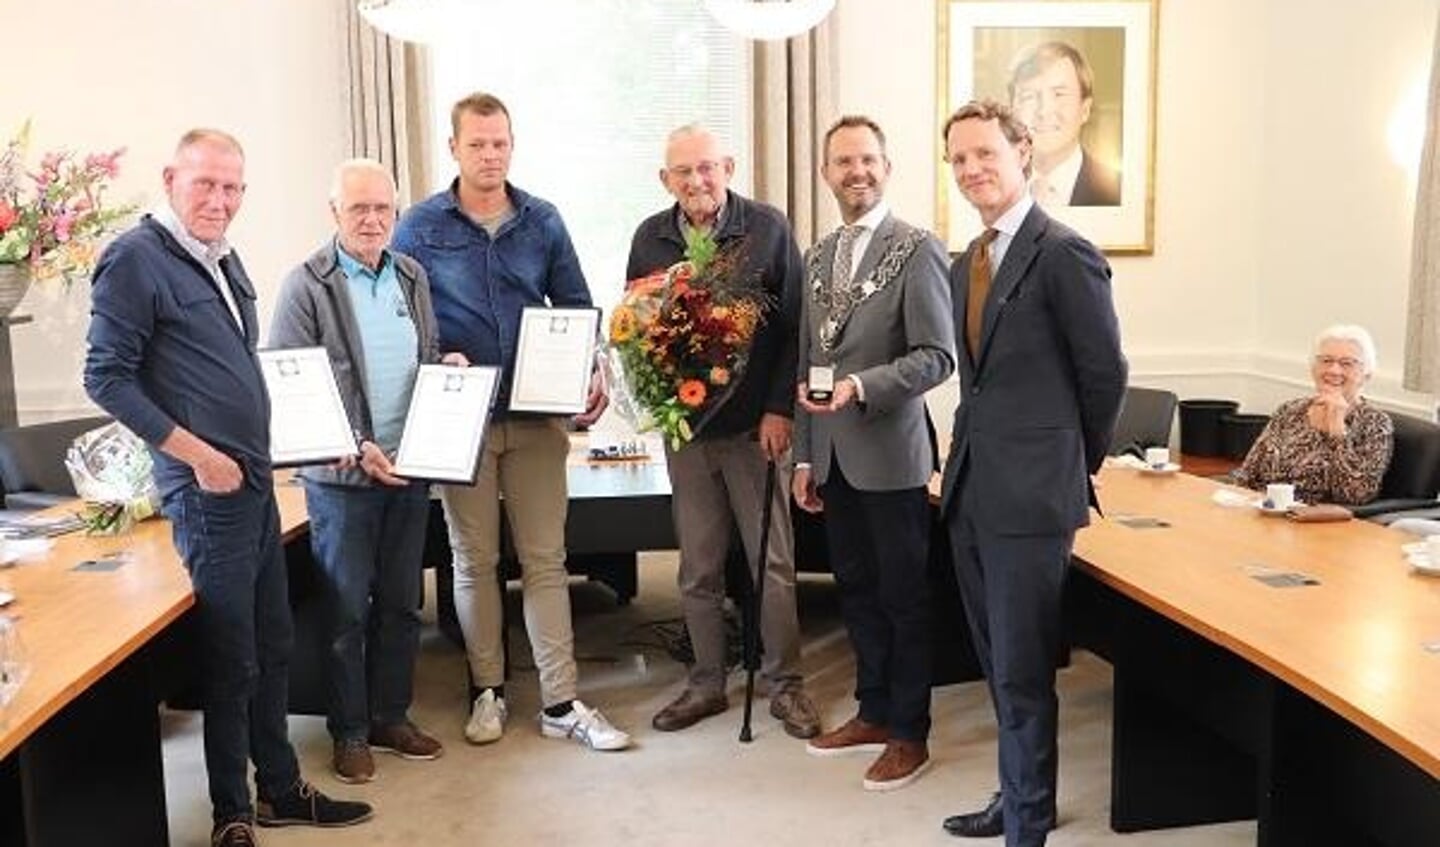 Van links naar rechts:
De heren Witteveen, Geurtsen, Tol, Van Woudenberg, burgemeester Laurens de Graaf en de heer Gunning.
Op de achtergrond: mevrouw Van Woudenberg